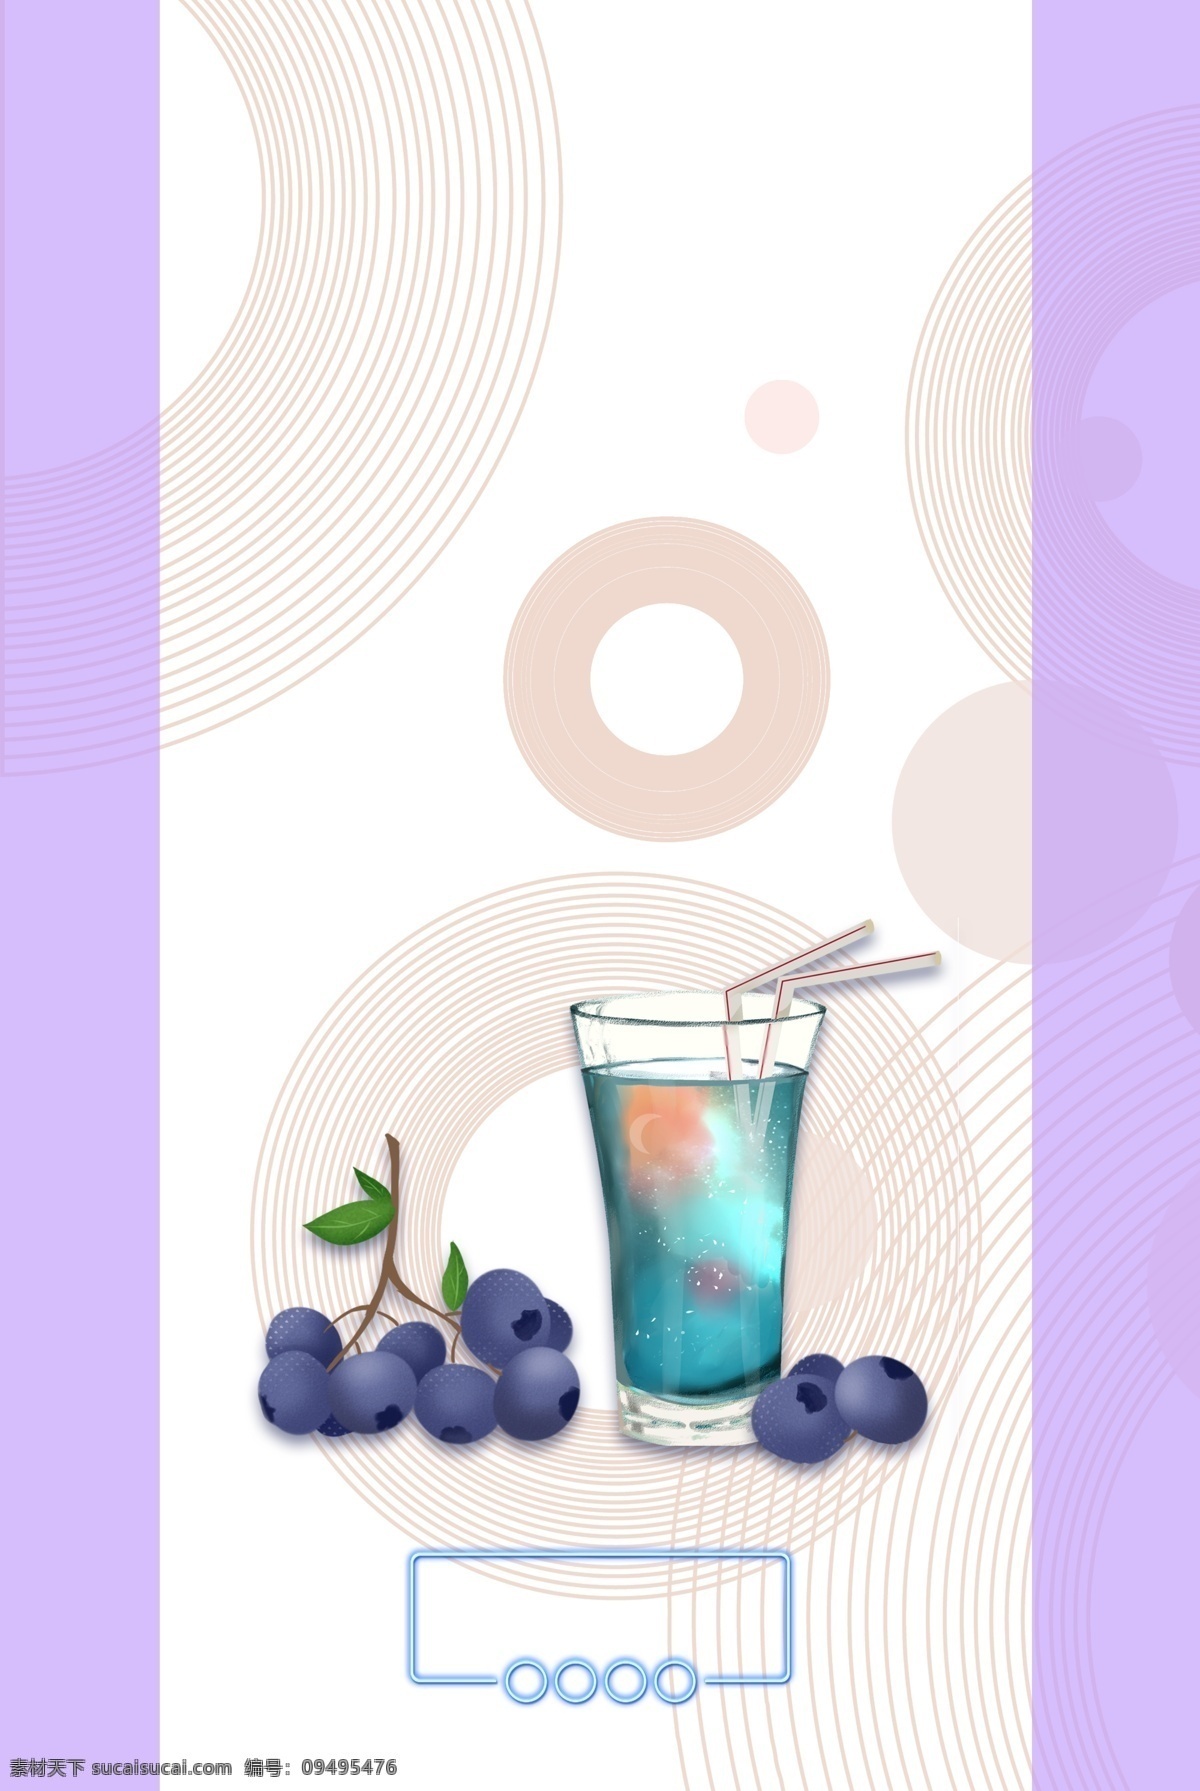 蓝莓 水果 夏日 饮料 紫色 冰水 冰镇 夏天 果汁